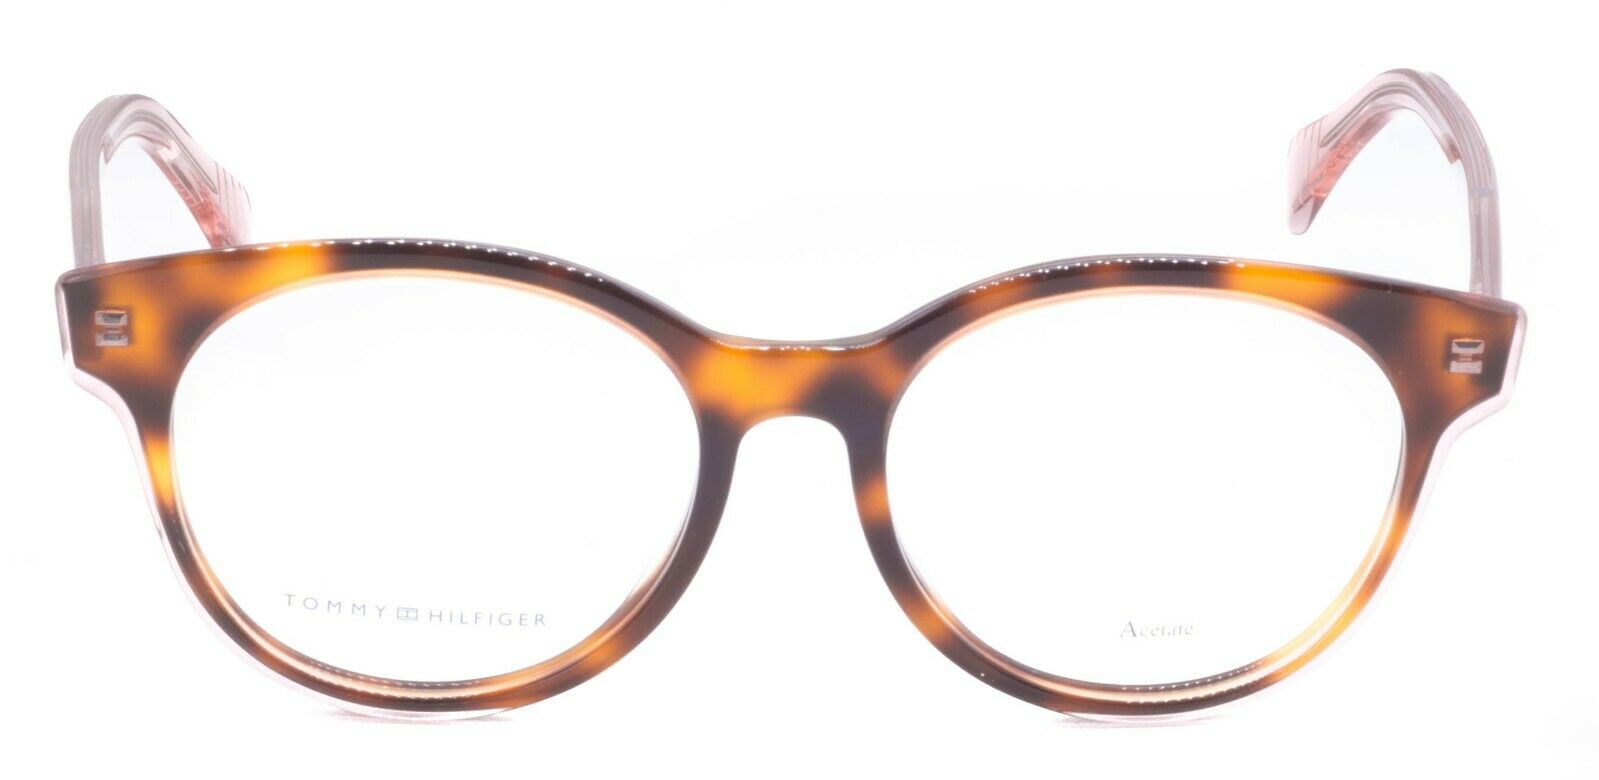 TOMMY HILFIGER TH 1465/F LQ8 51mm Eyewear FRAMES Glasses RX Optical Eyeglasses